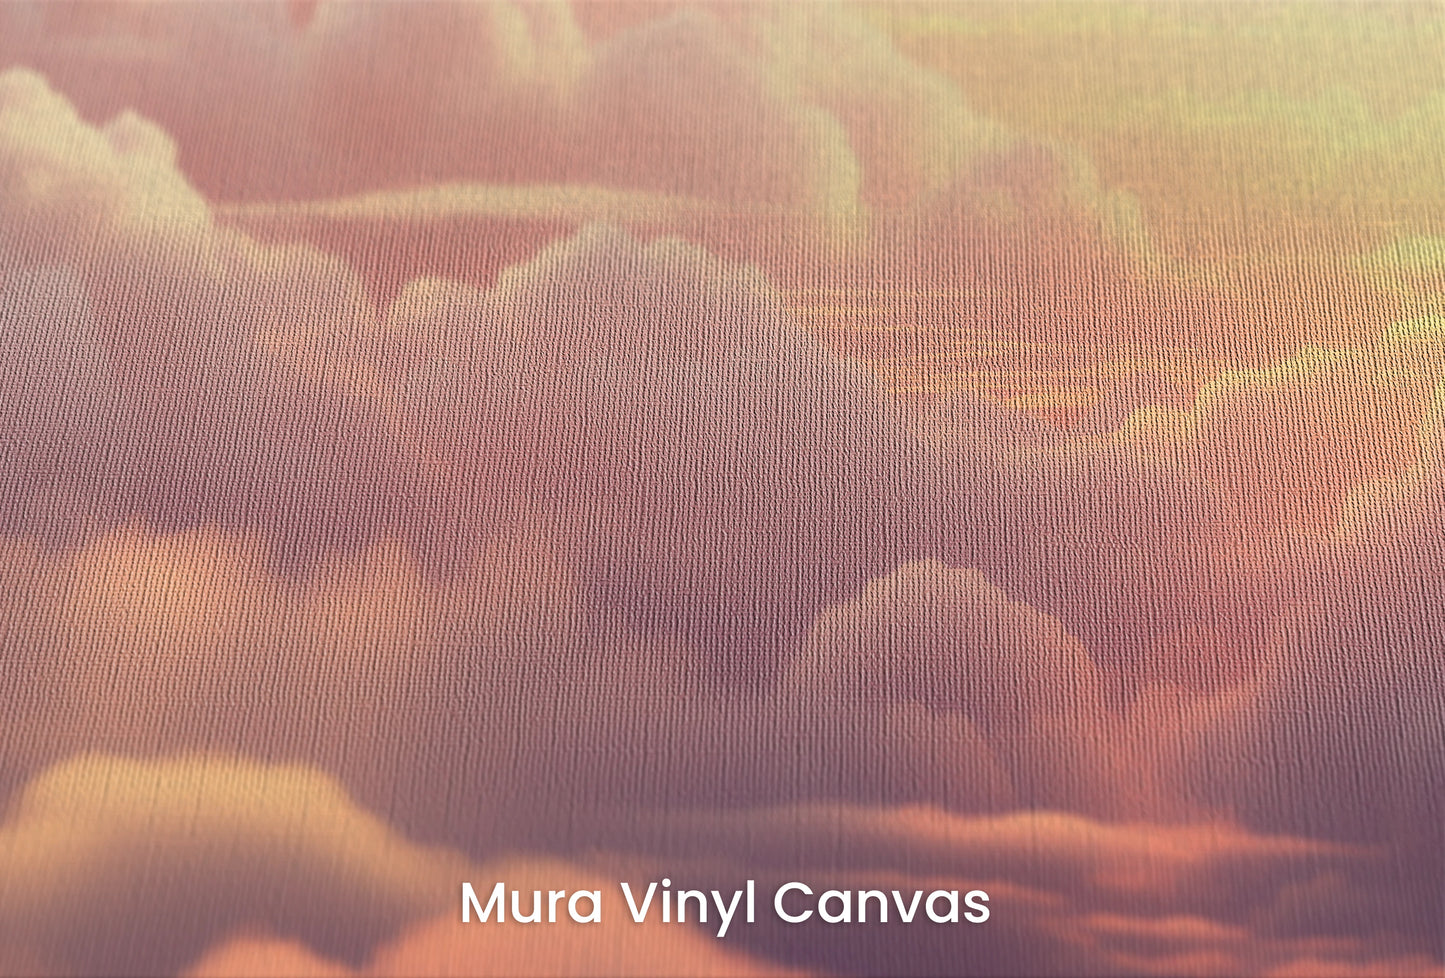 Zbliżenie na artystyczną fototapetę o nazwie Azure Dream na podłożu Mura Vinyl Canvas - faktura naturalnego płótna.